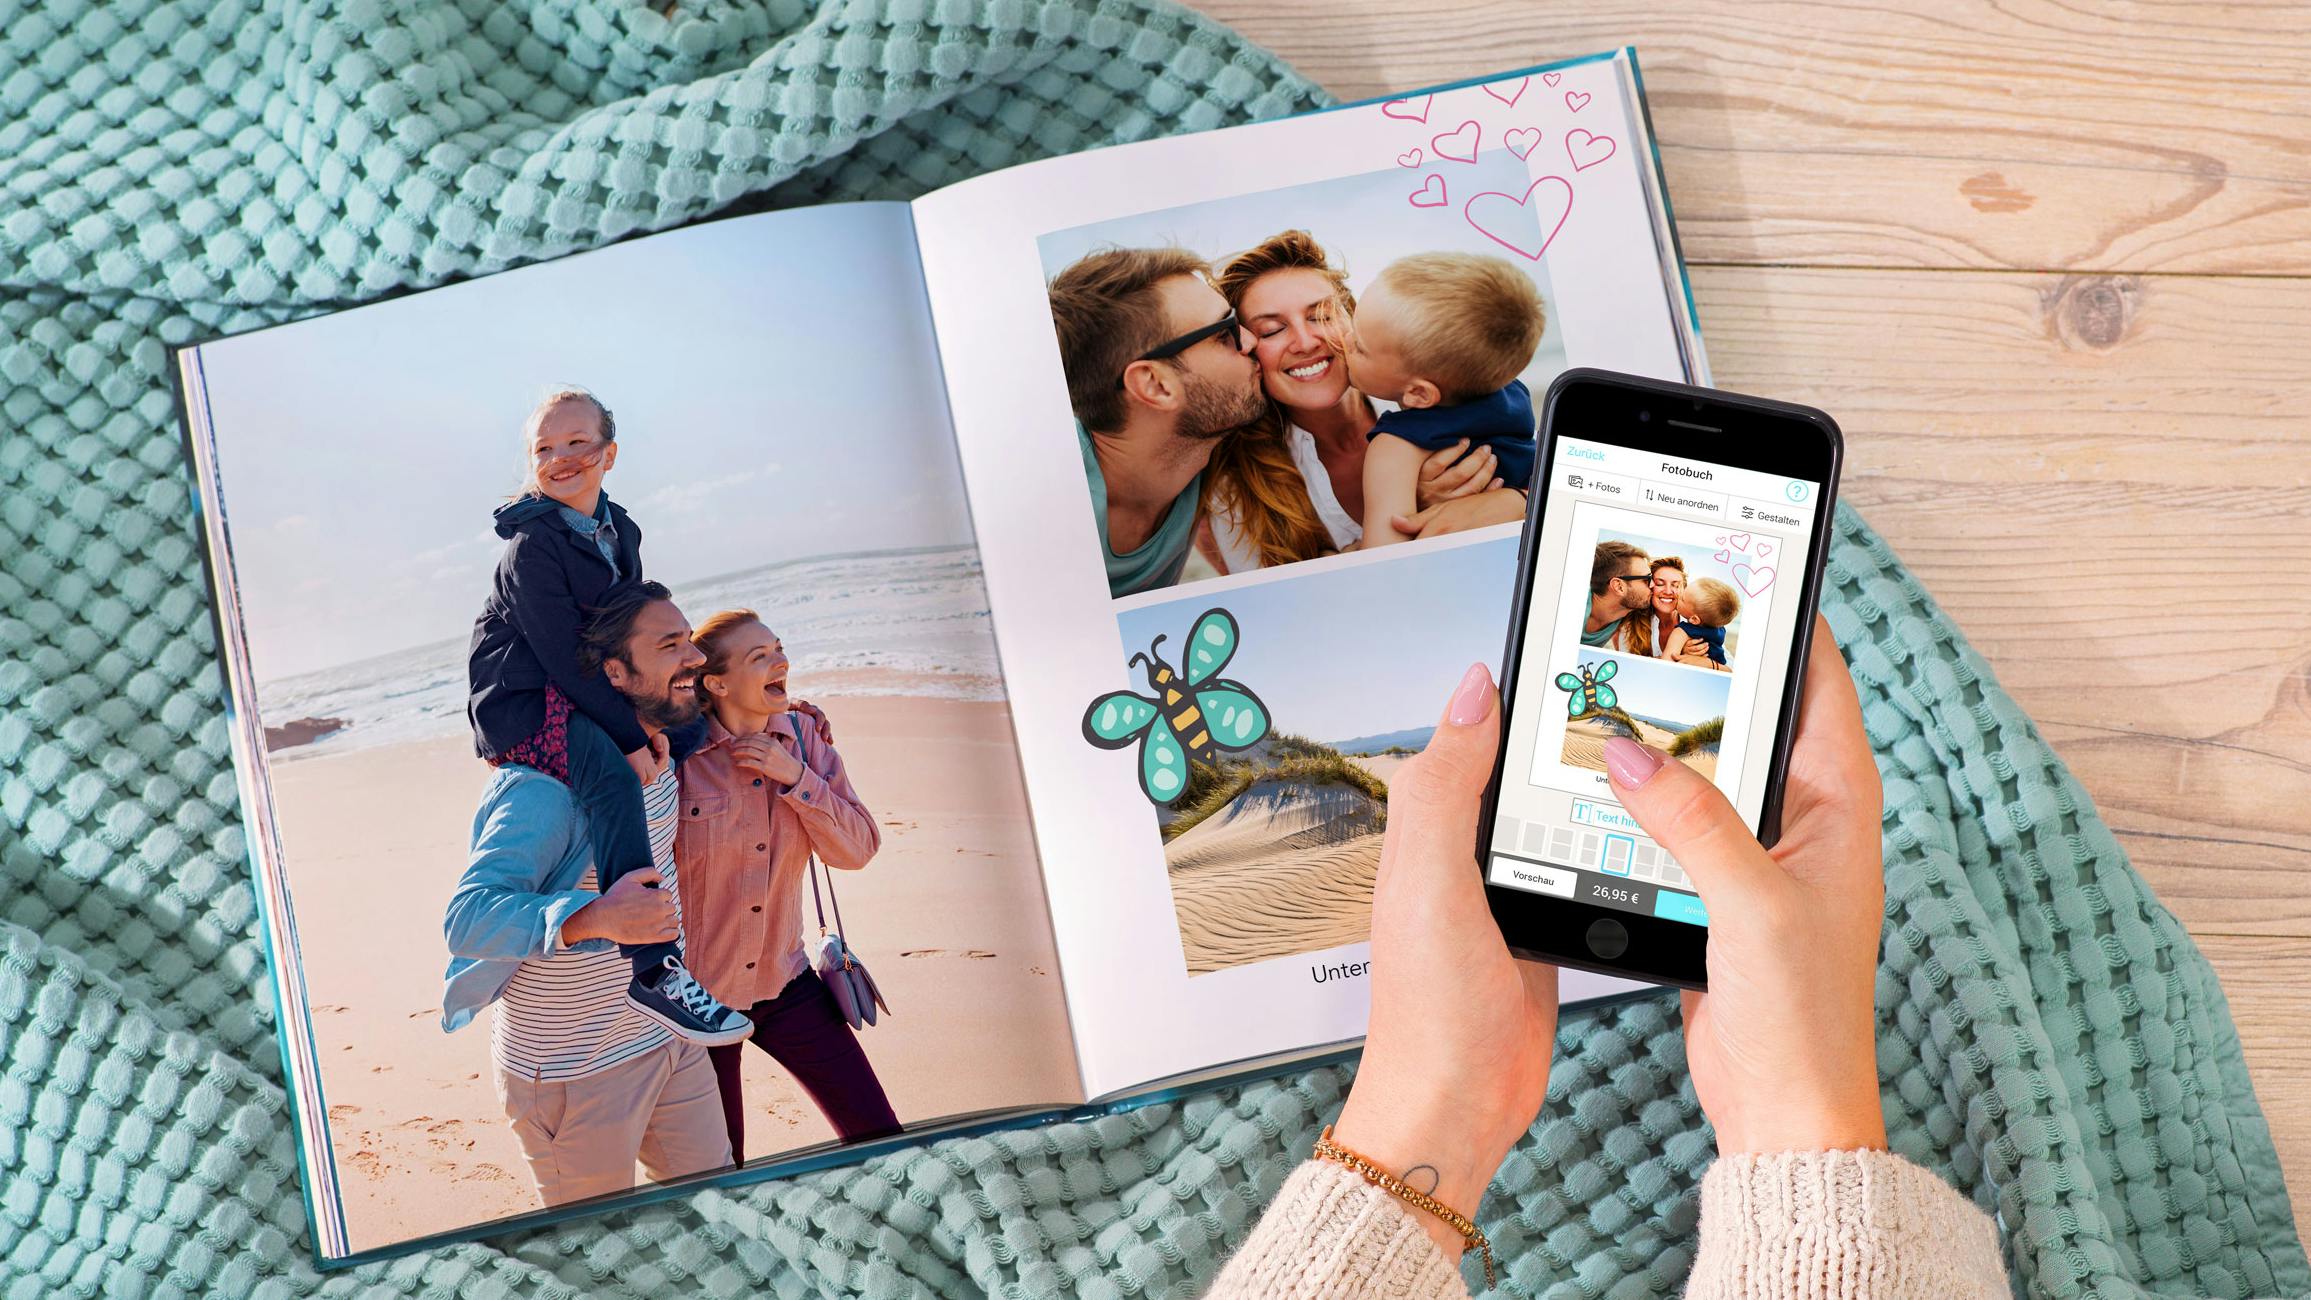 Aufgeschlagenes Fotobuch im Hochformat mit sommerlichen Motiven und Cliparts und zwei Hände, die ein Smartphone halten